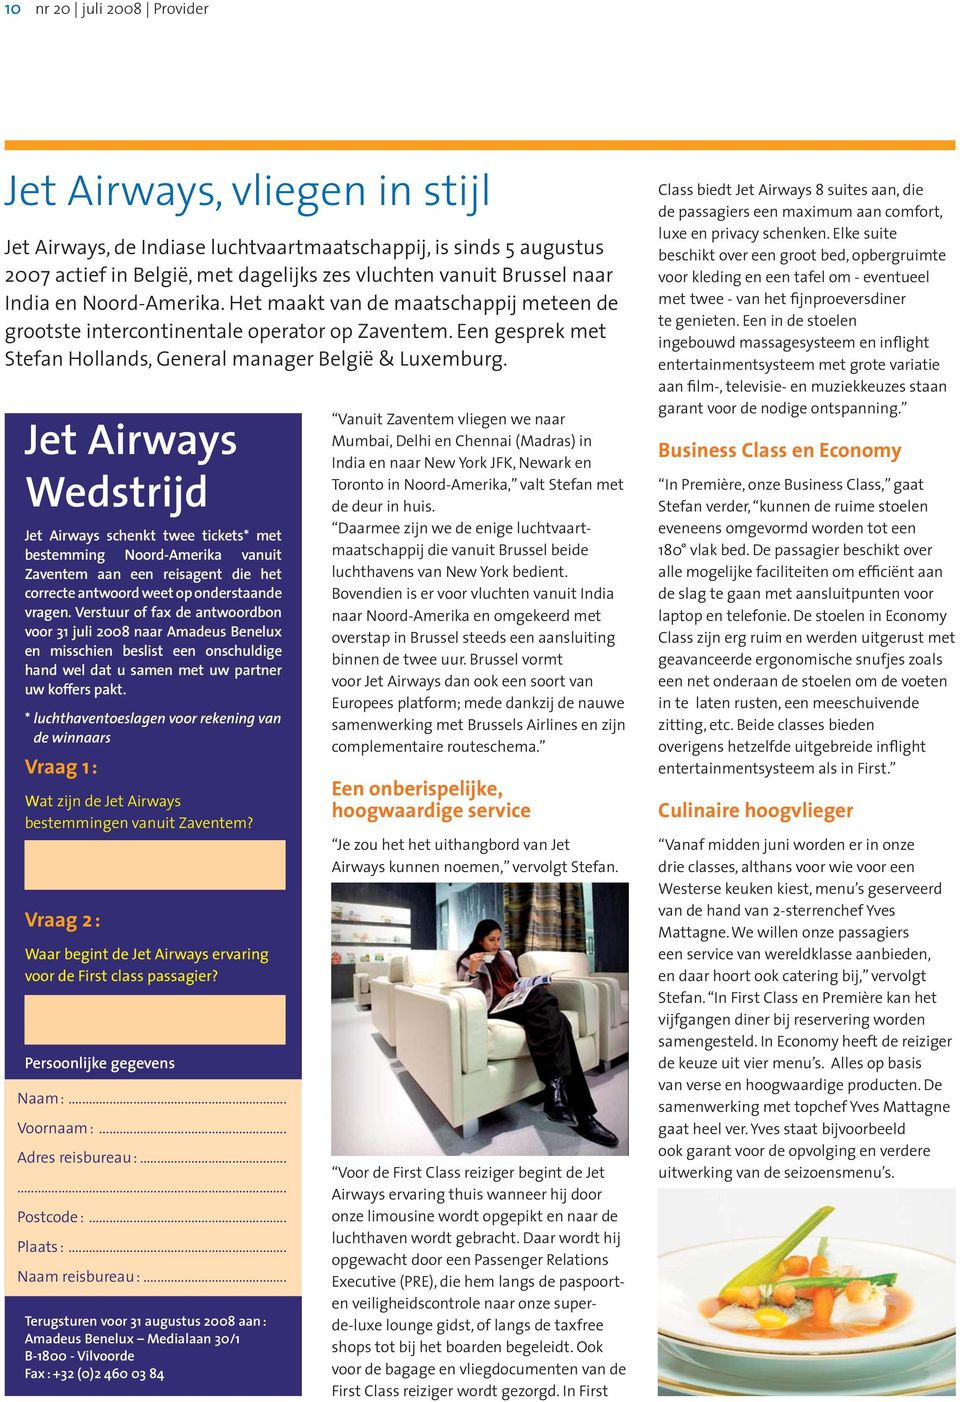 Jet Airways Wedstrijd Jet Airways schenkt twee tickets* met bestemming Noord-Amerika vanuit Zaventem aan een reisagent die het correcte antwoord weet op onderstaande vragen.